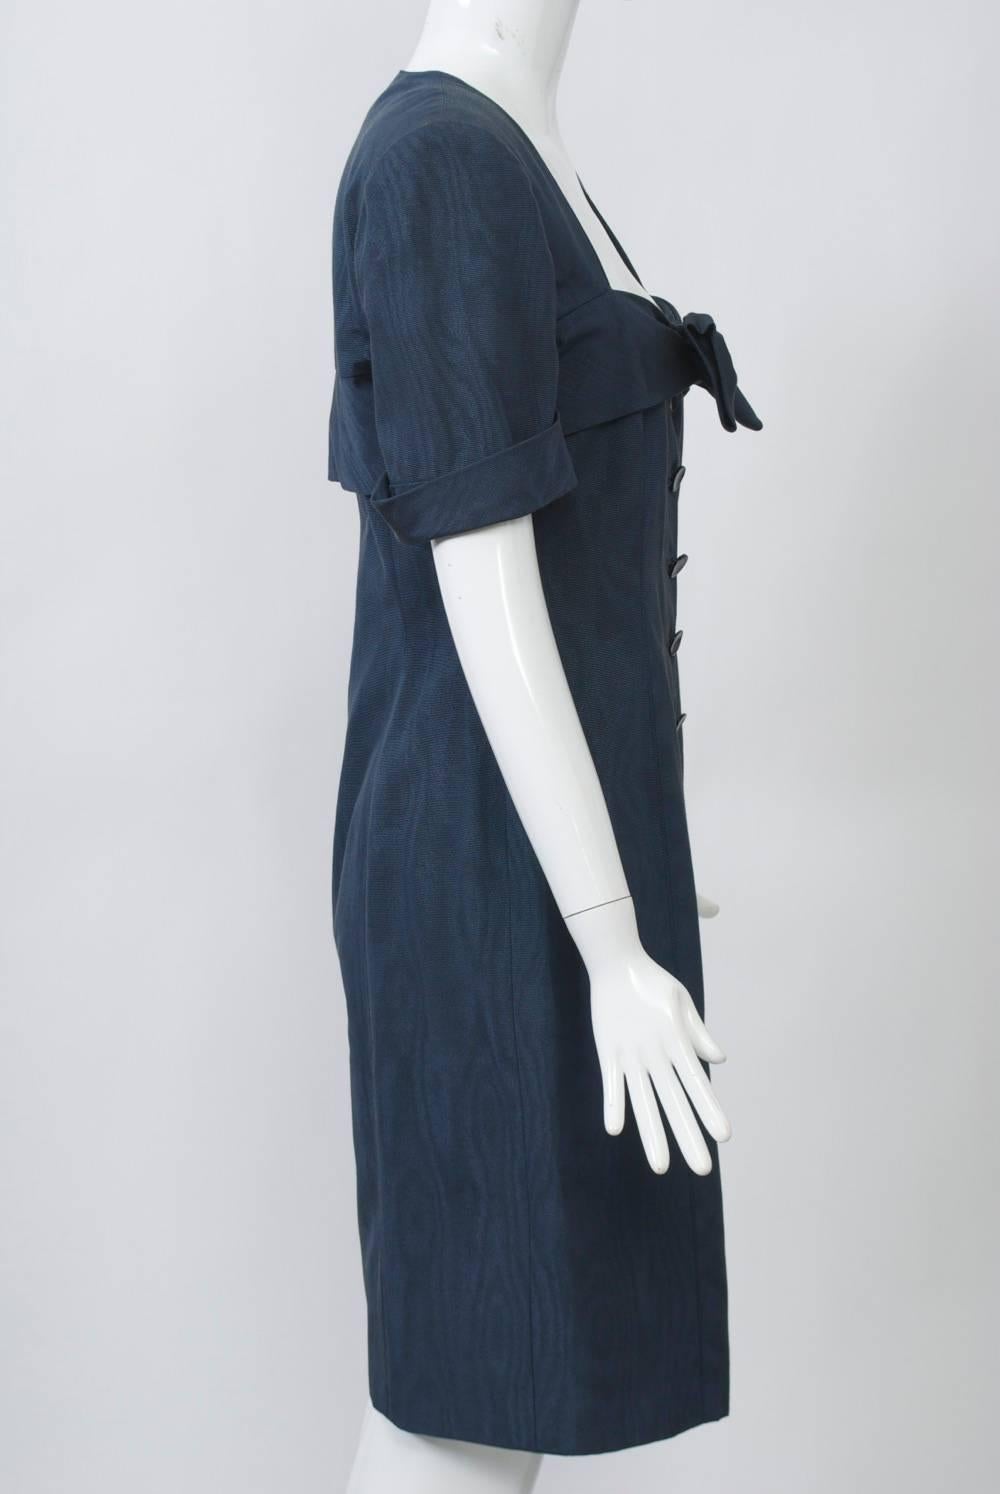 Stahlblaues Moiré-Kleid von Ungaro mit tiefem, quadratischem Ausschnitt und großer Schleife, die an einem breiten, überlagernden Band befestigt ist, das das Kleid über Brust und Rücken umgibt. Knöpfe auf der Vorderseite. Kurze Ärmel mit